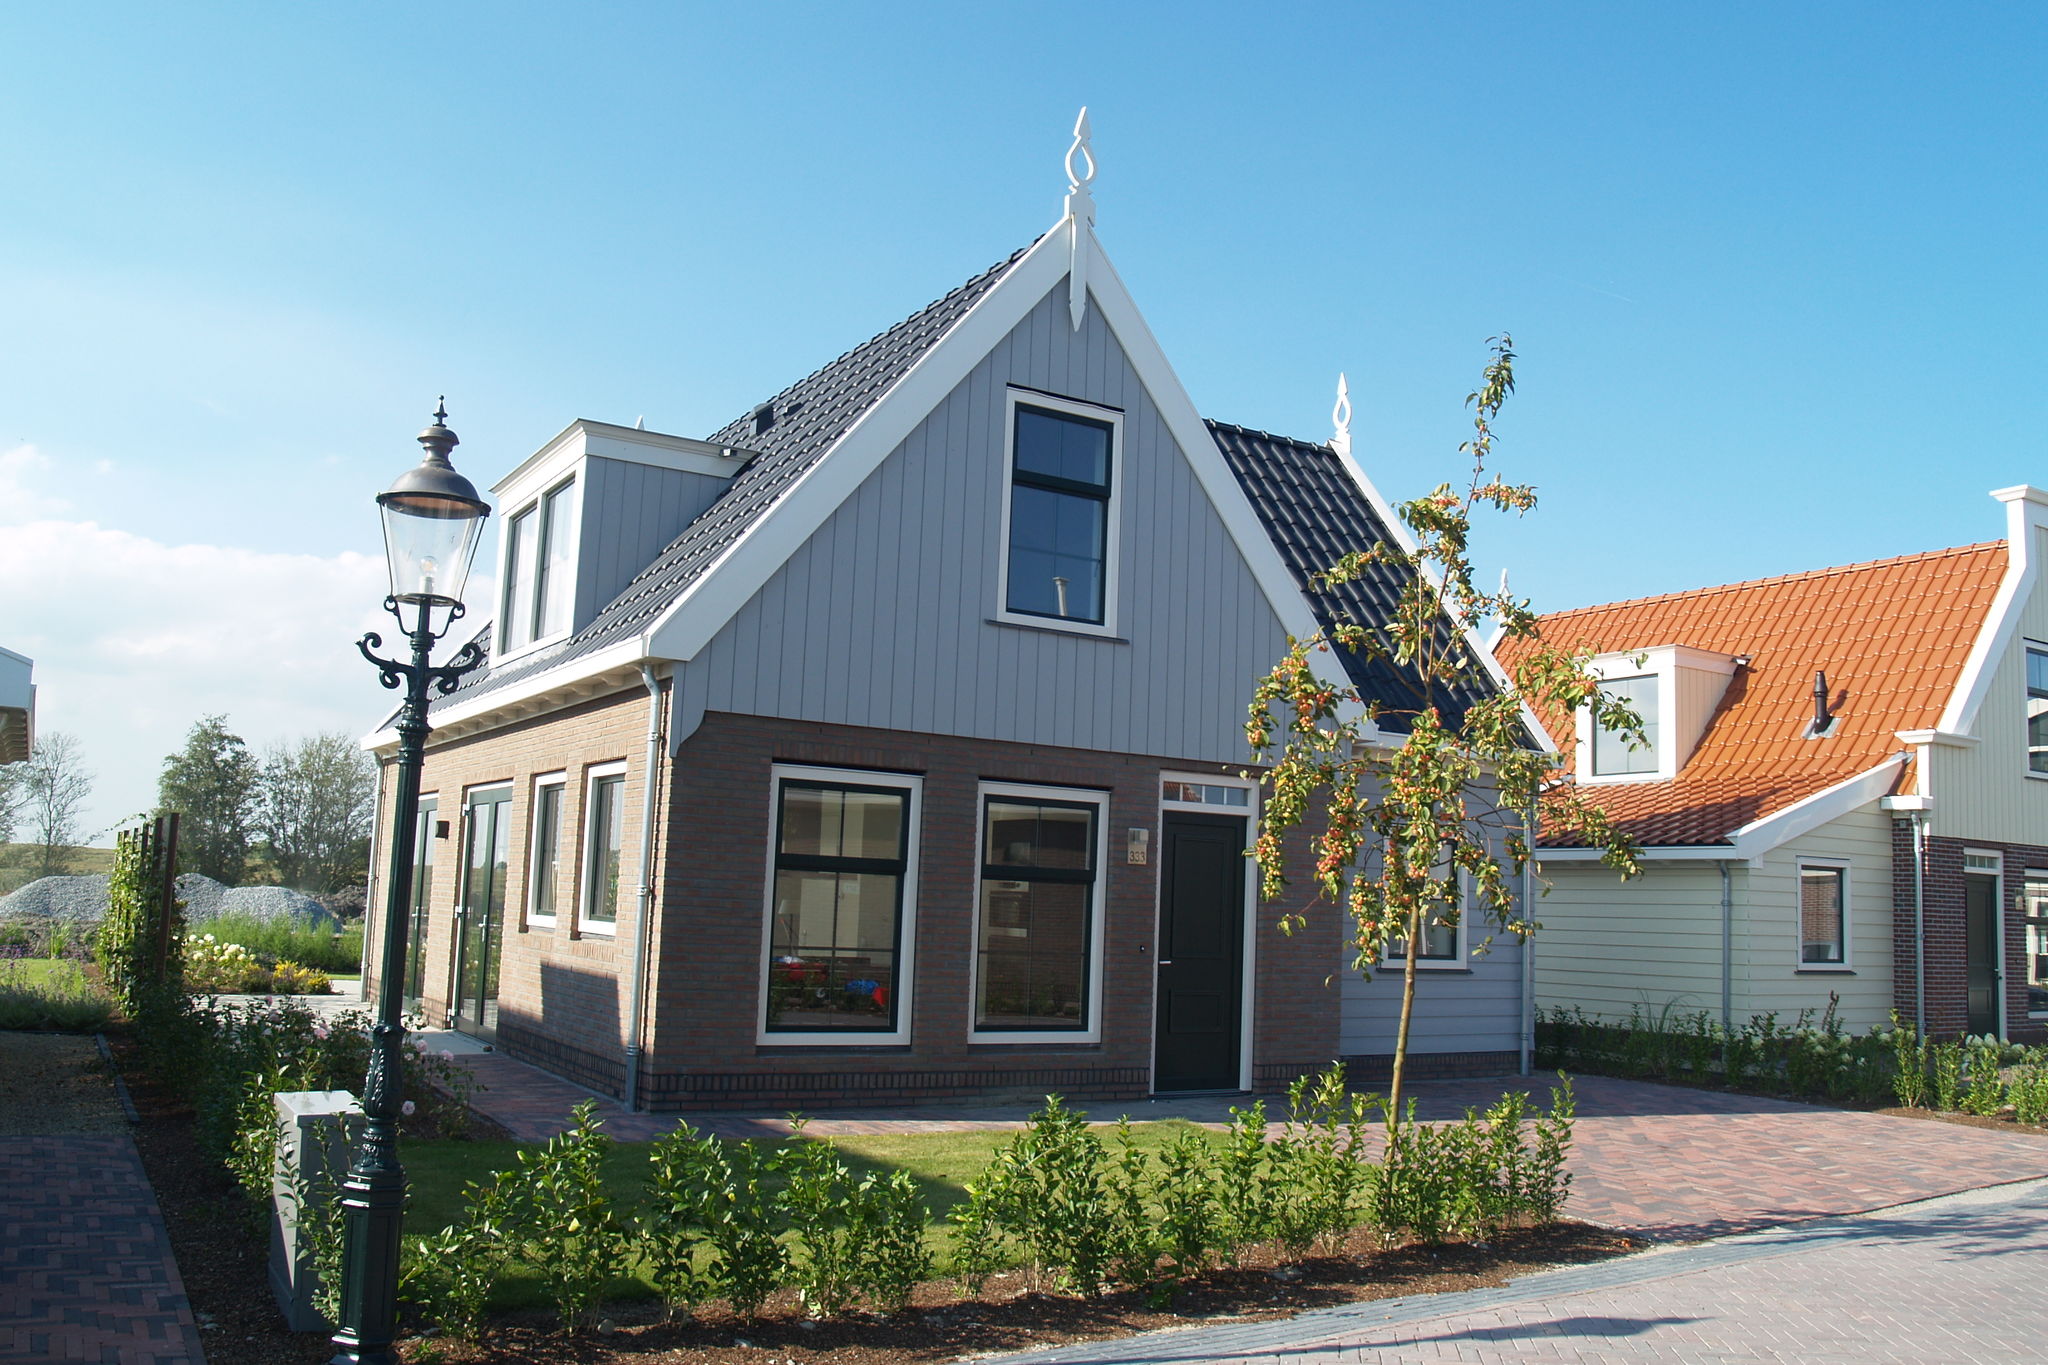 Vrijstaand vakantiehuis aan het Markermeer, nabij Amsterdam